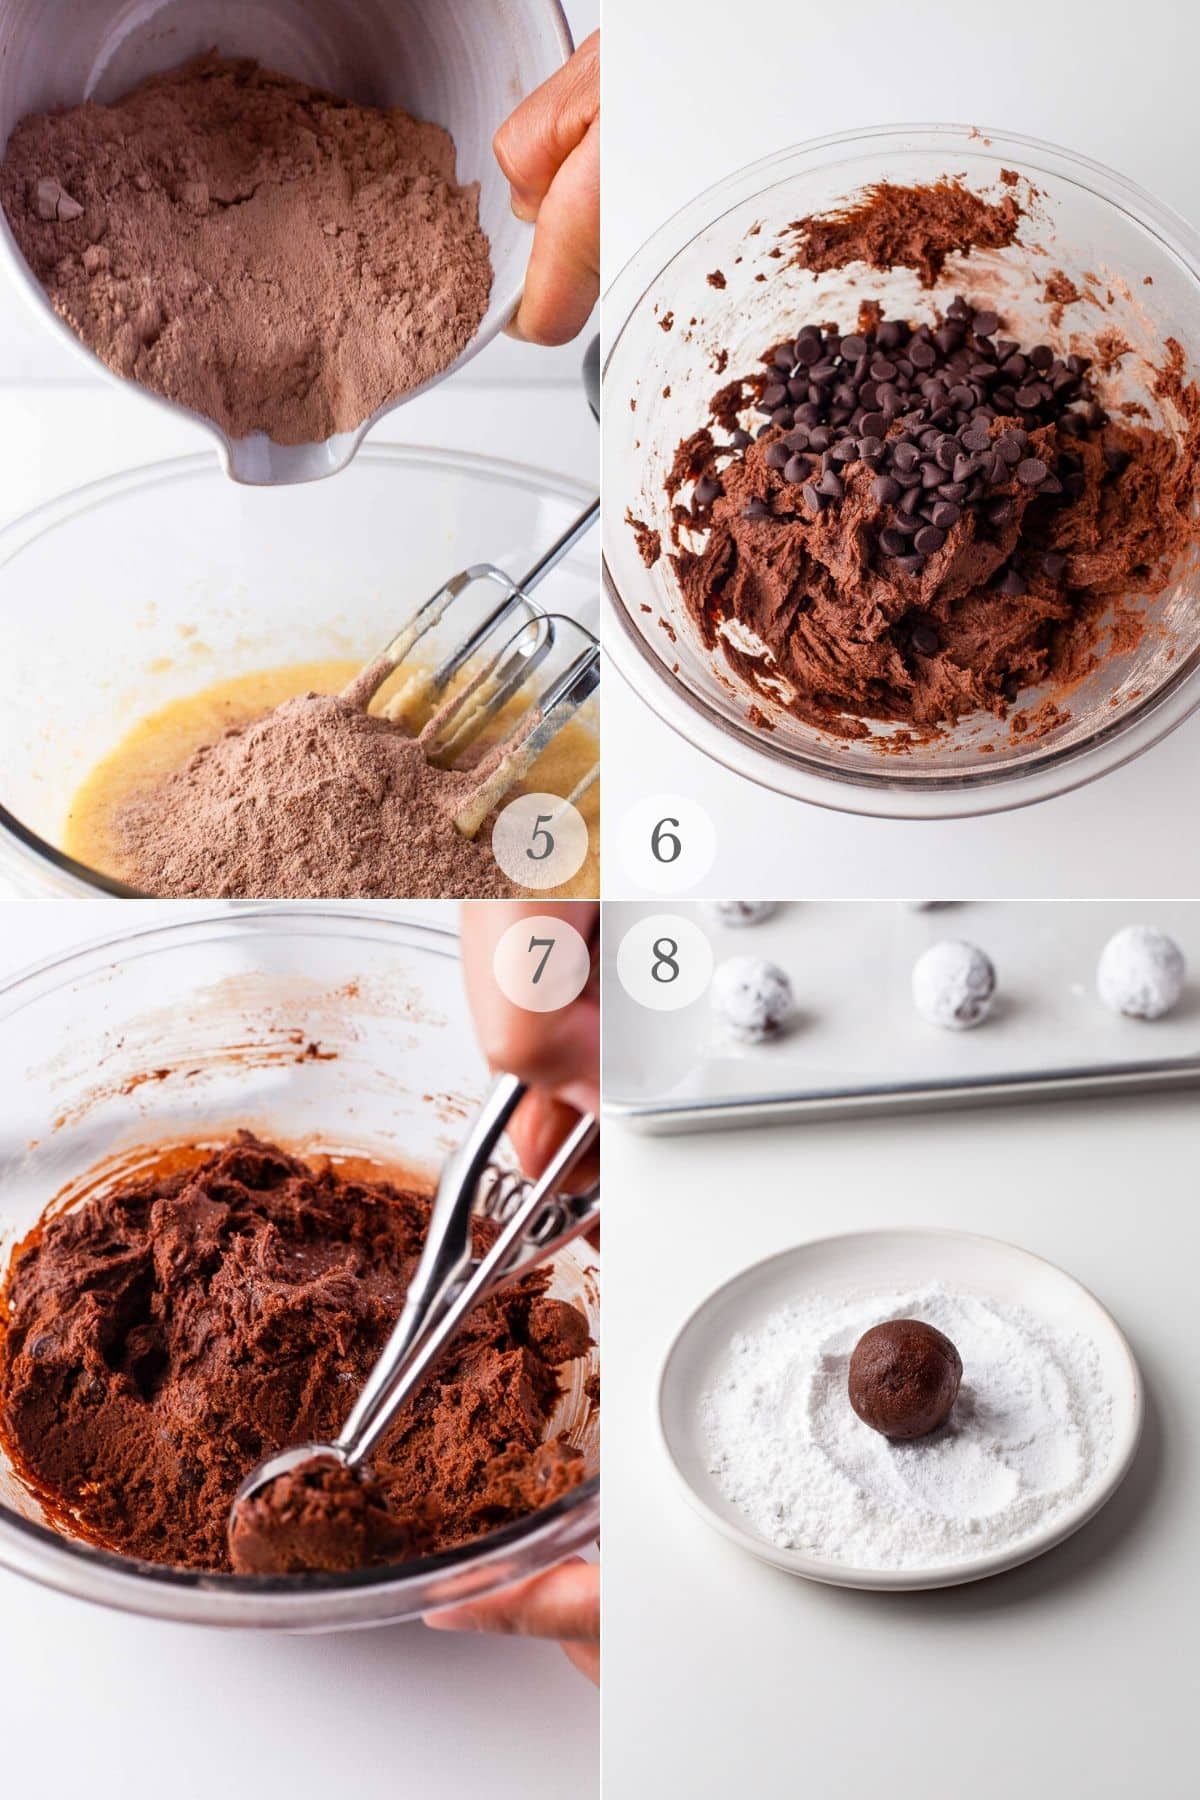 chocolate crinkle cookies recipe steps 5-8